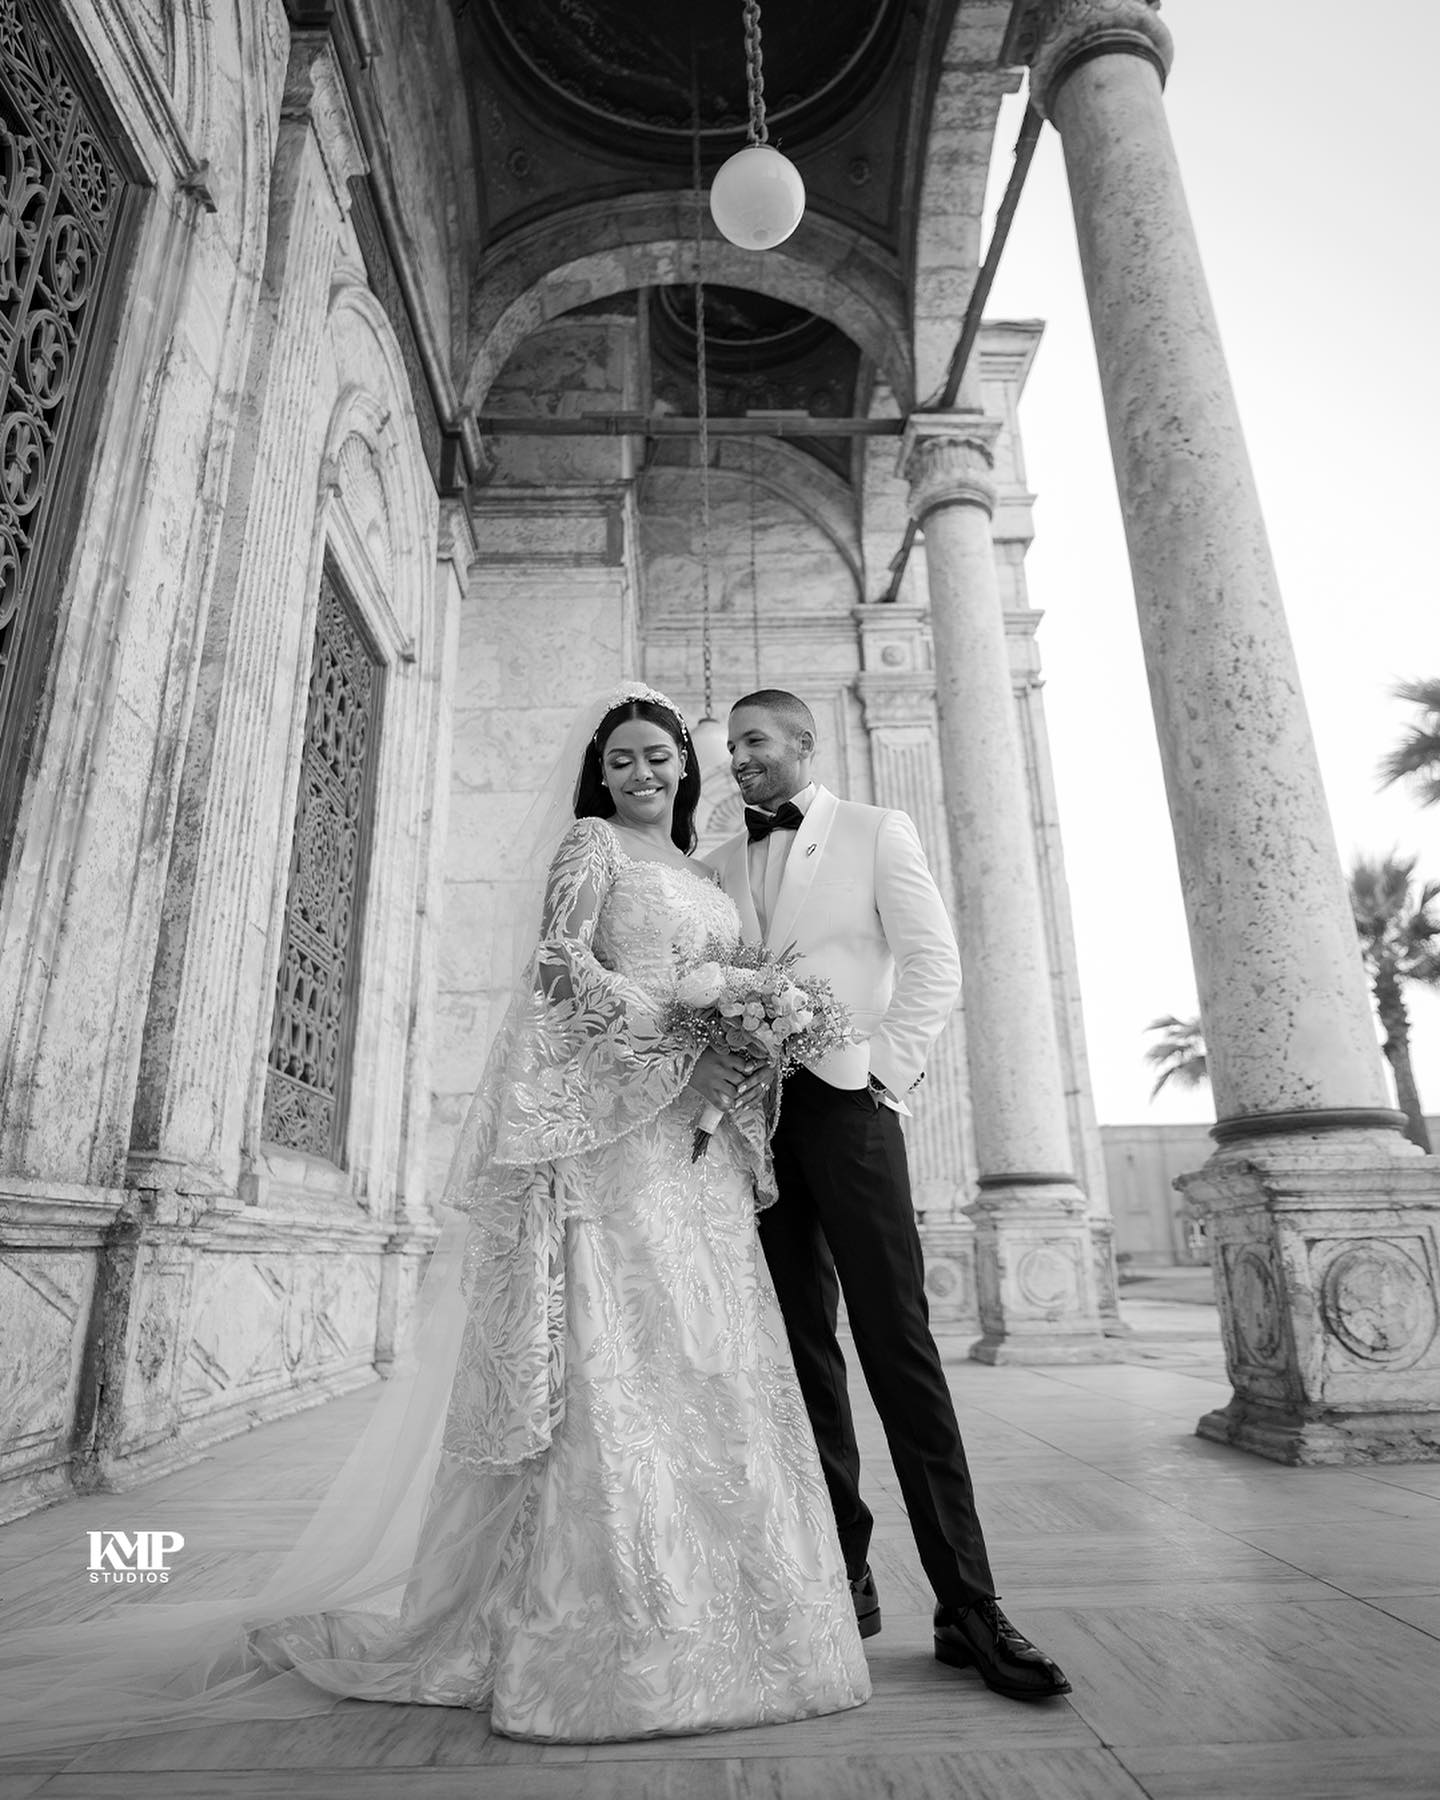 صور جديدة من حفل زفاف أسماء ابو اليزيد (6)